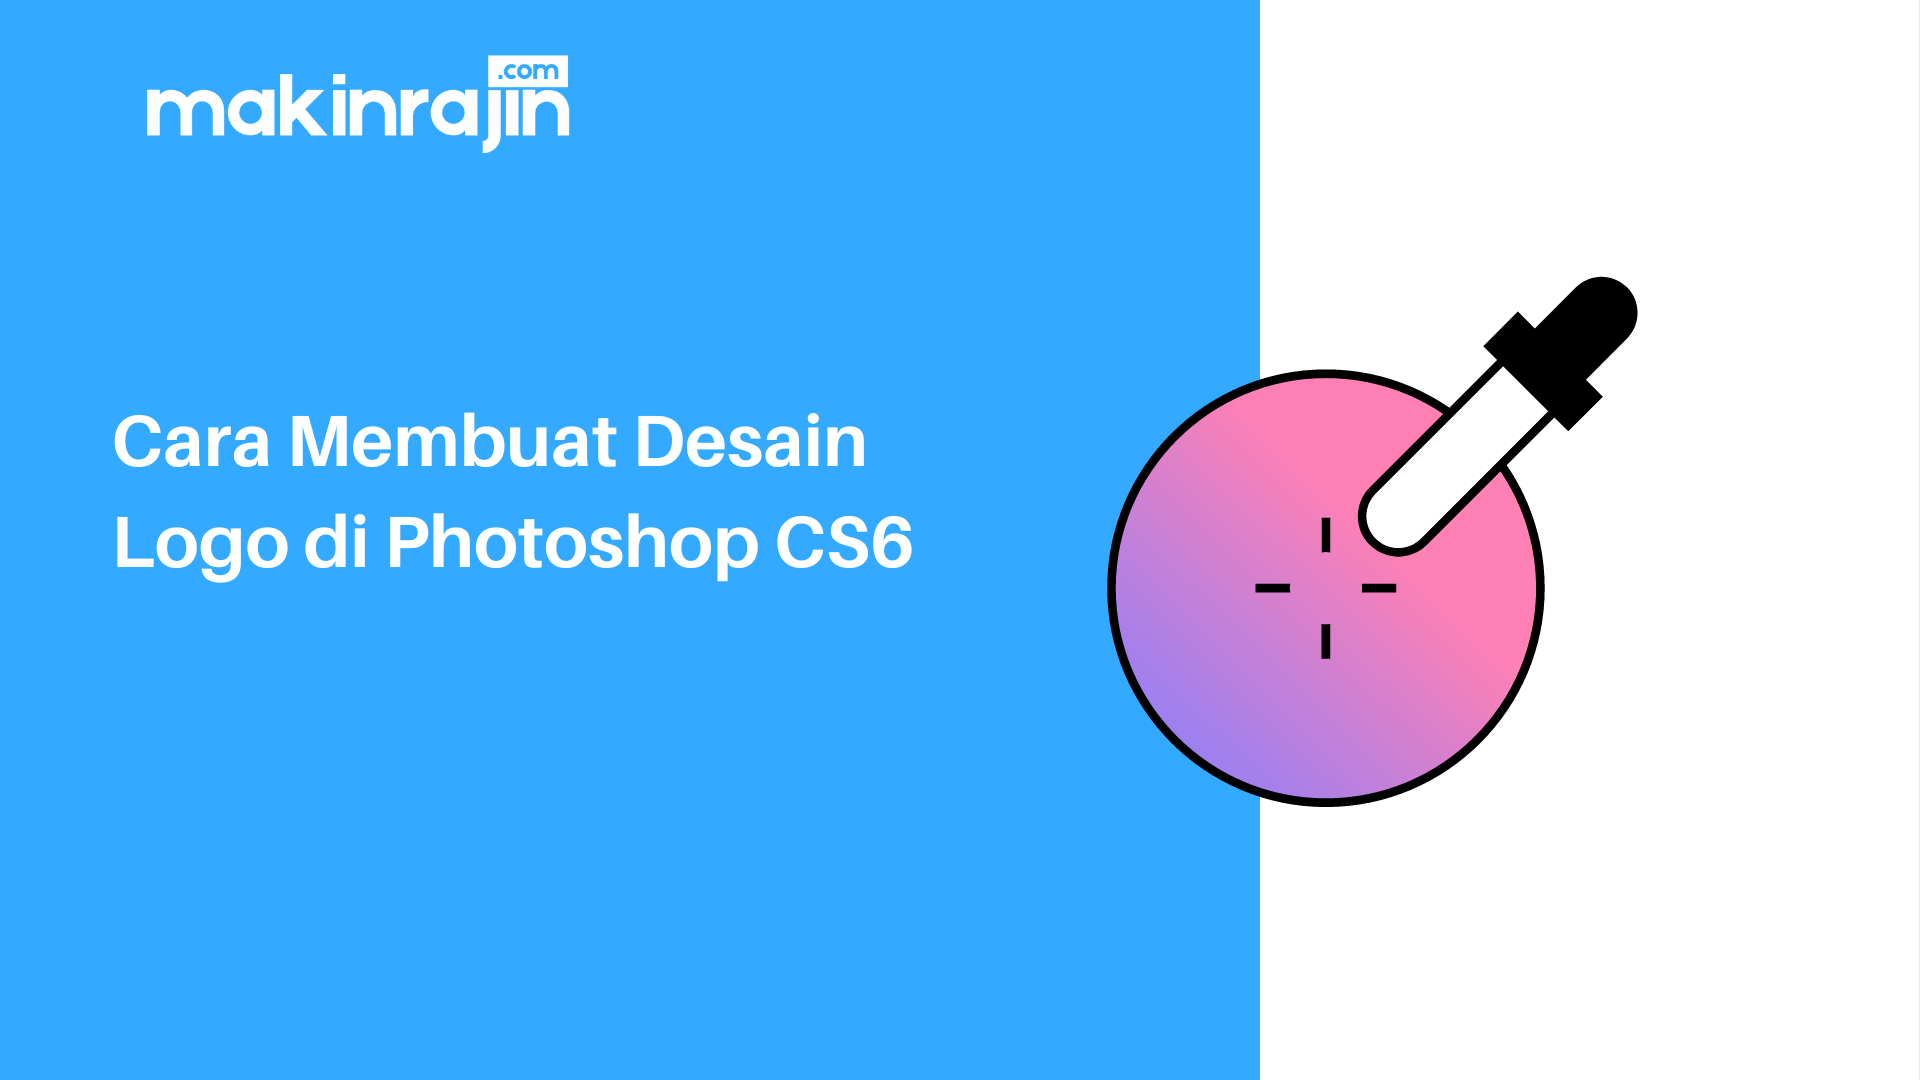 Cara Membuat Desain Logo di Photoshop CS6